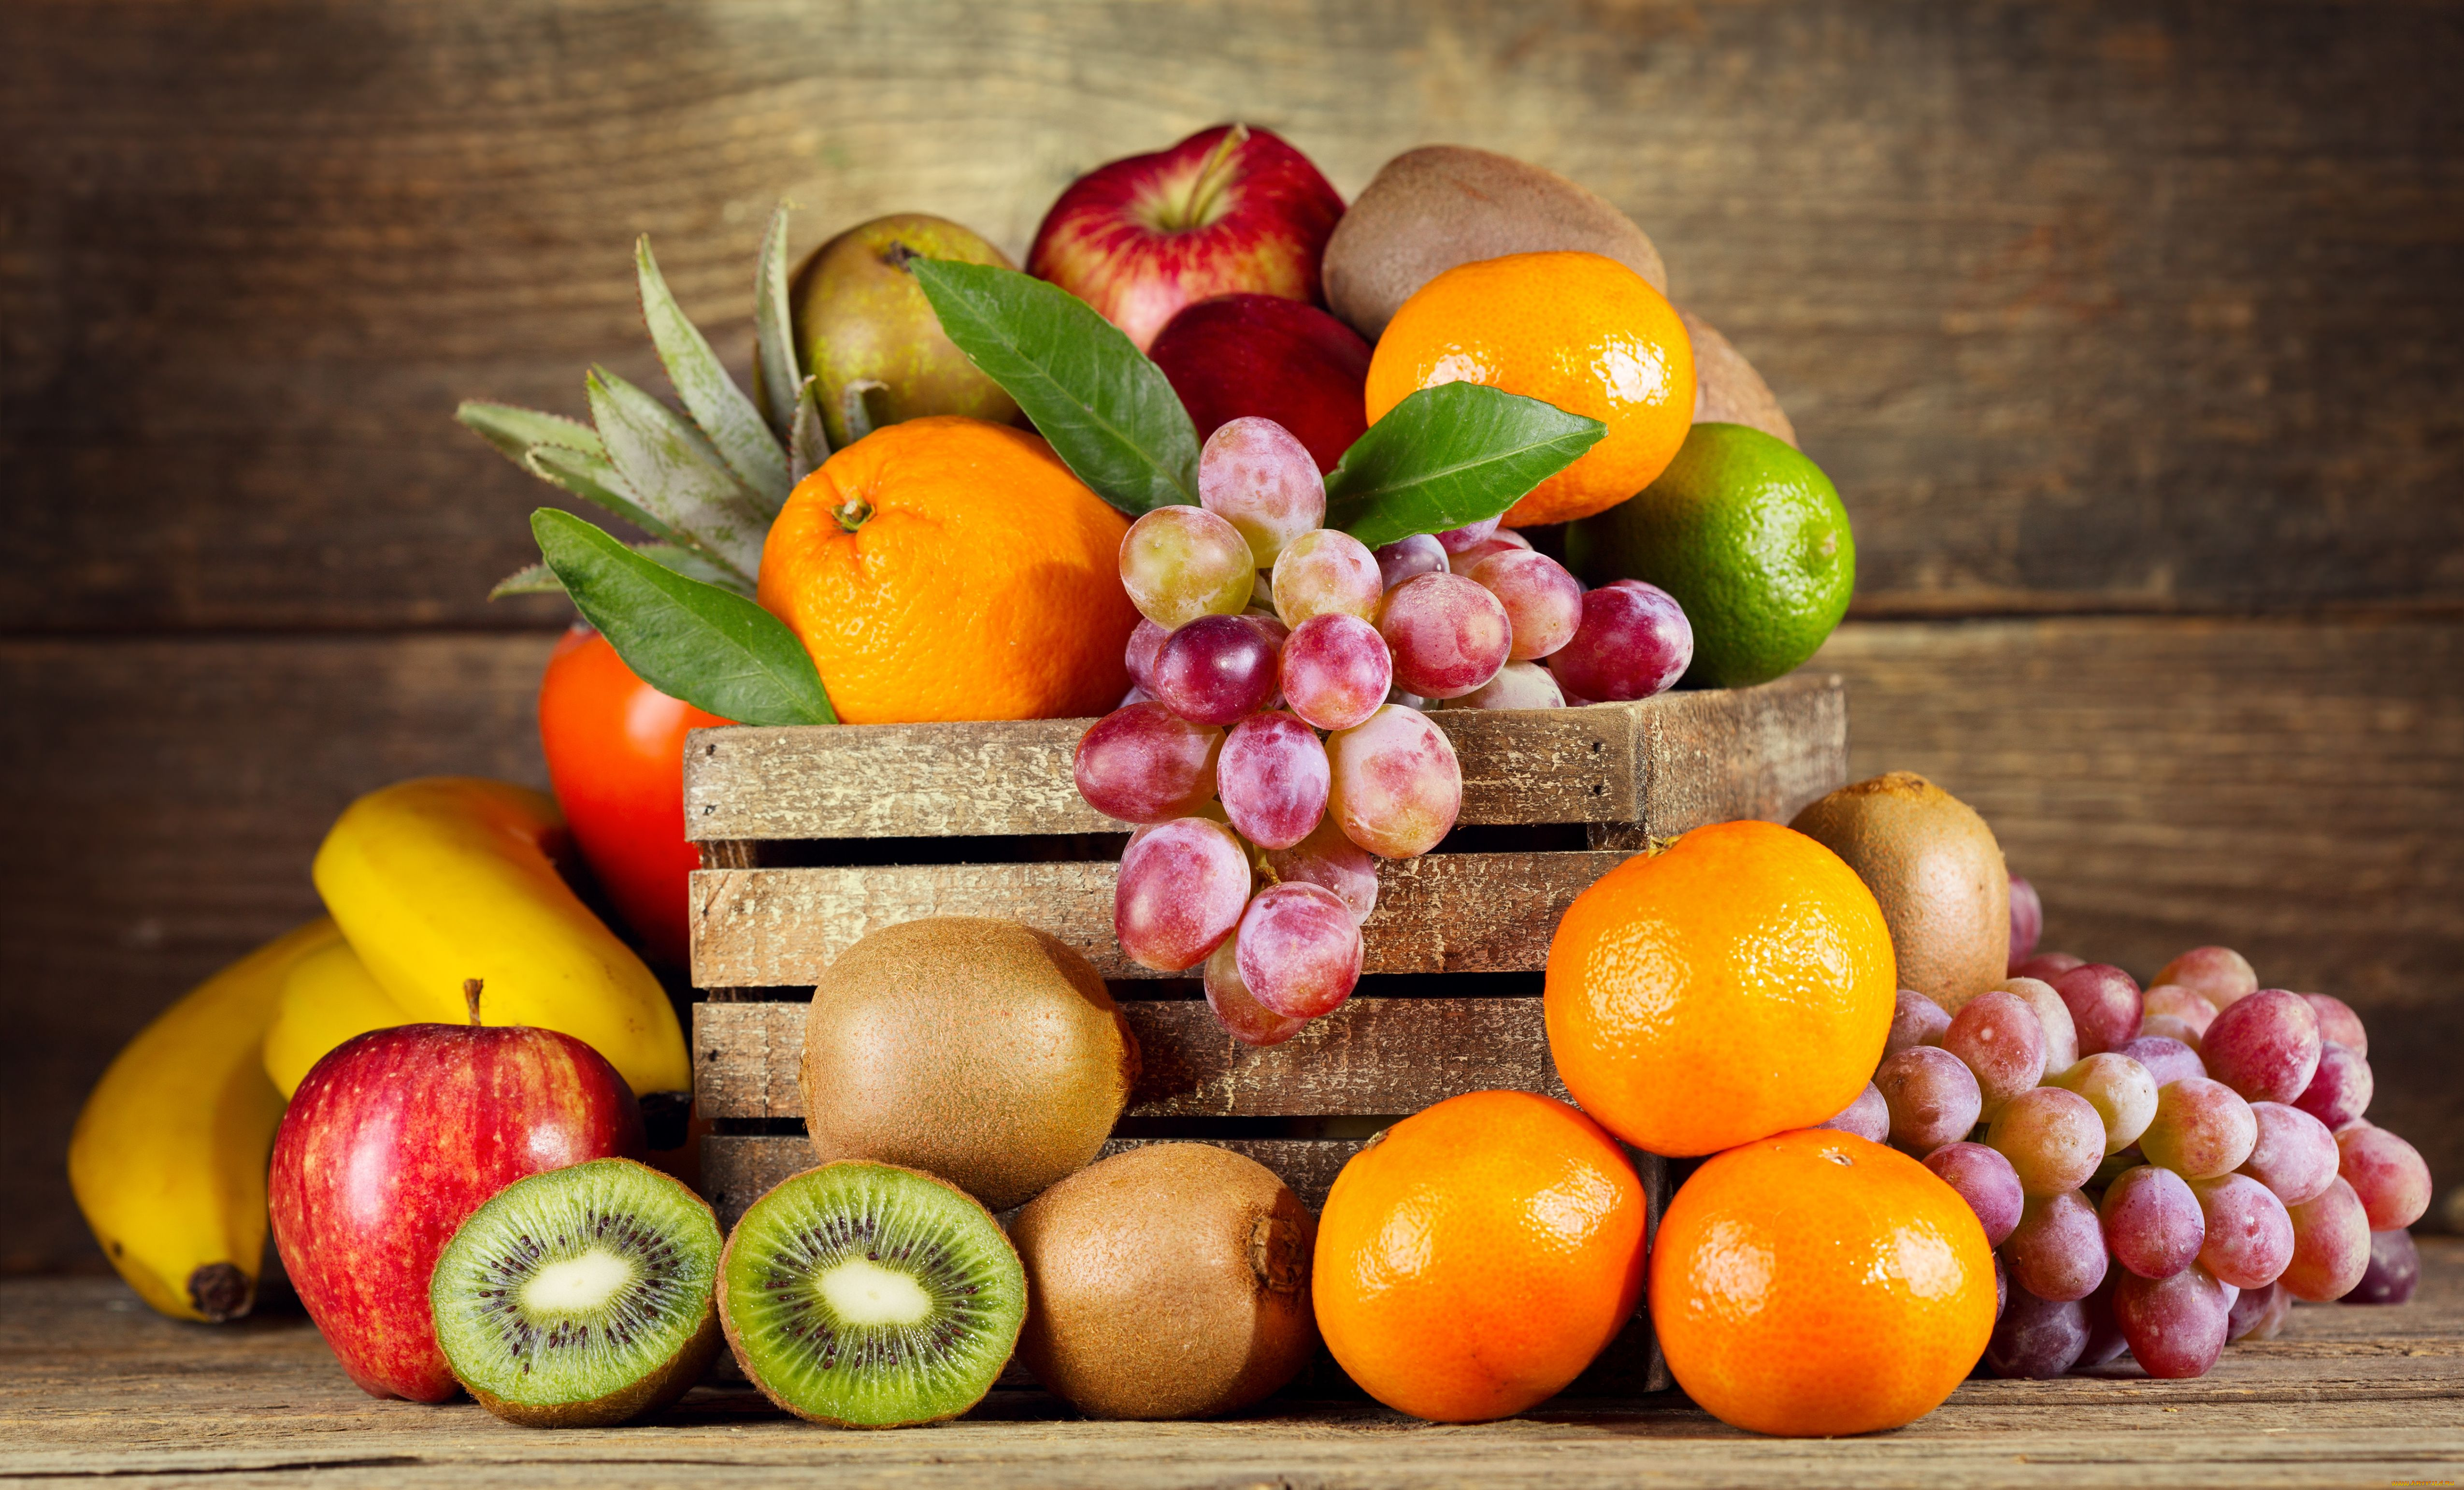 еда, фрукты, , ягоды, яблоки, апельсины, мандарины, киви, виноград, ящик, ьананы